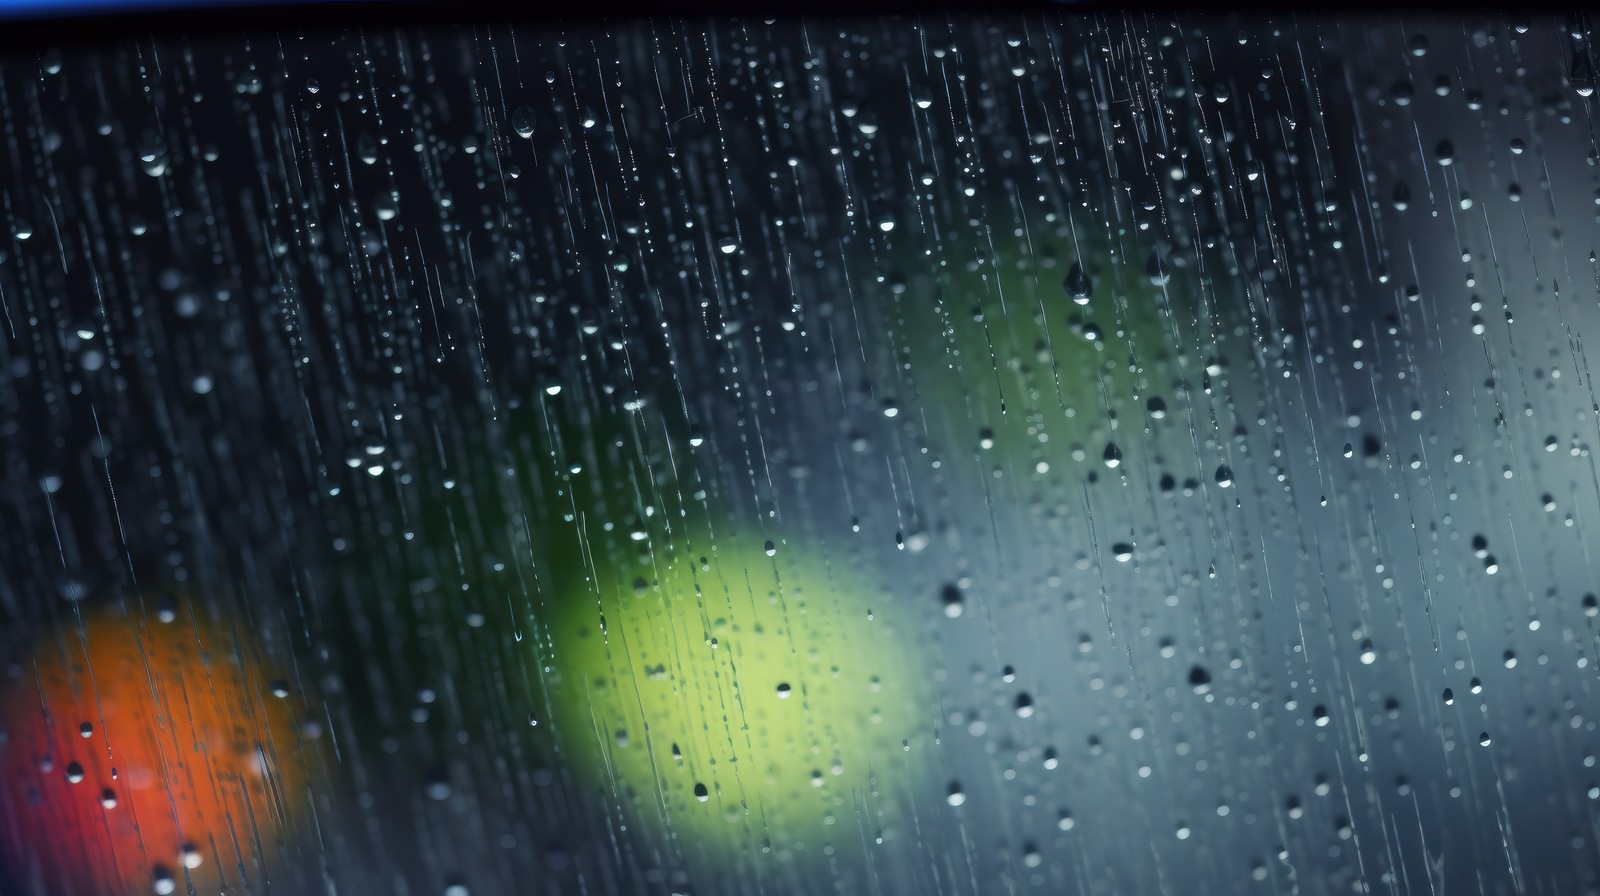 「雨が降った窓と流れる水滴 | フリー素材のぱくたそ」の写真